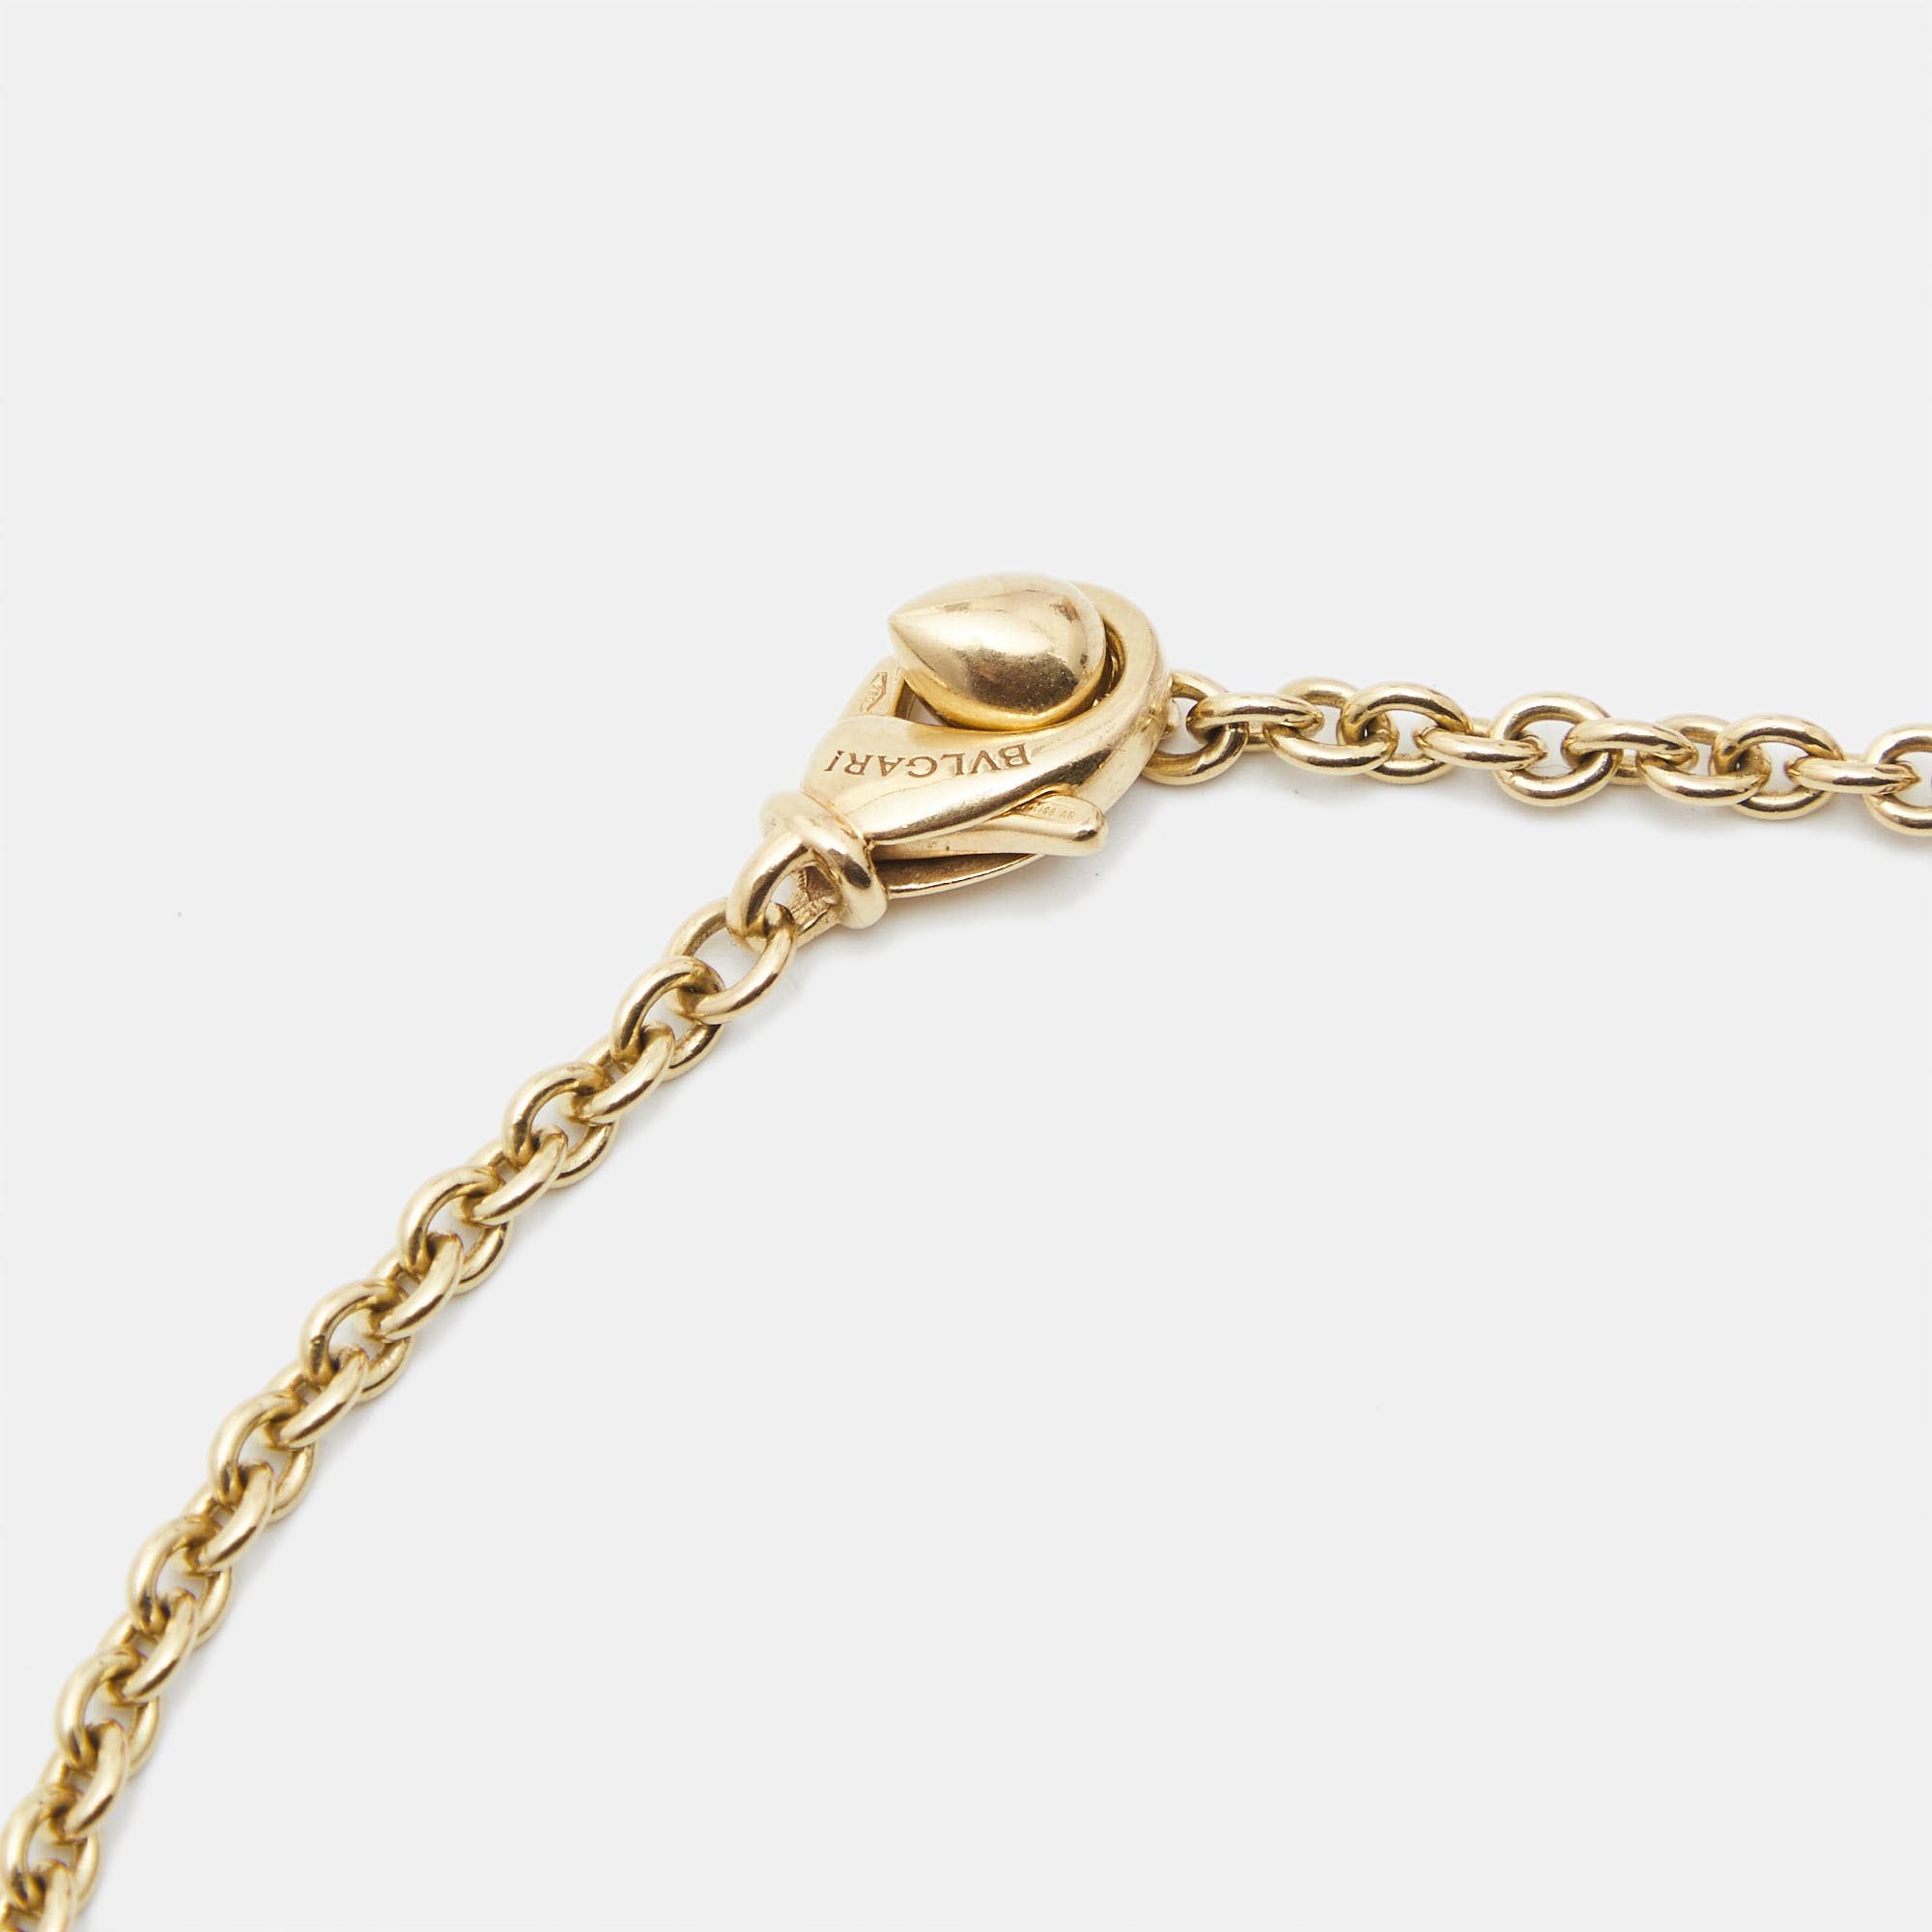 Bvlgari Catene 18k Yellow Gold Chain Necklace